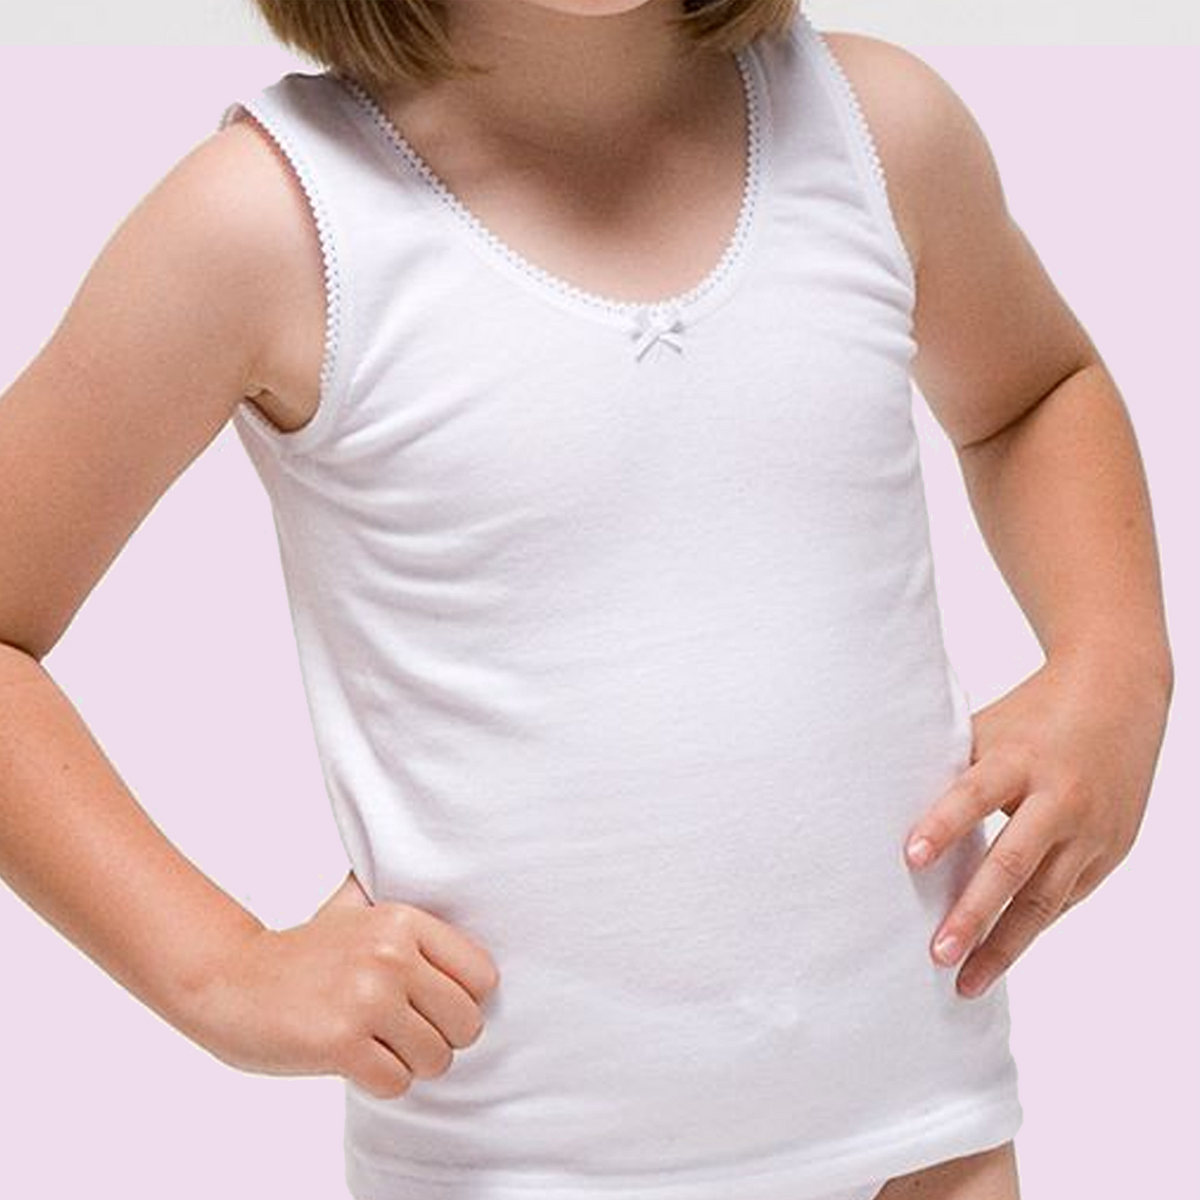 Posibilidades Perforar mueble Evalerina - Camiseta interior infantil blanca – Evalerina Oficial